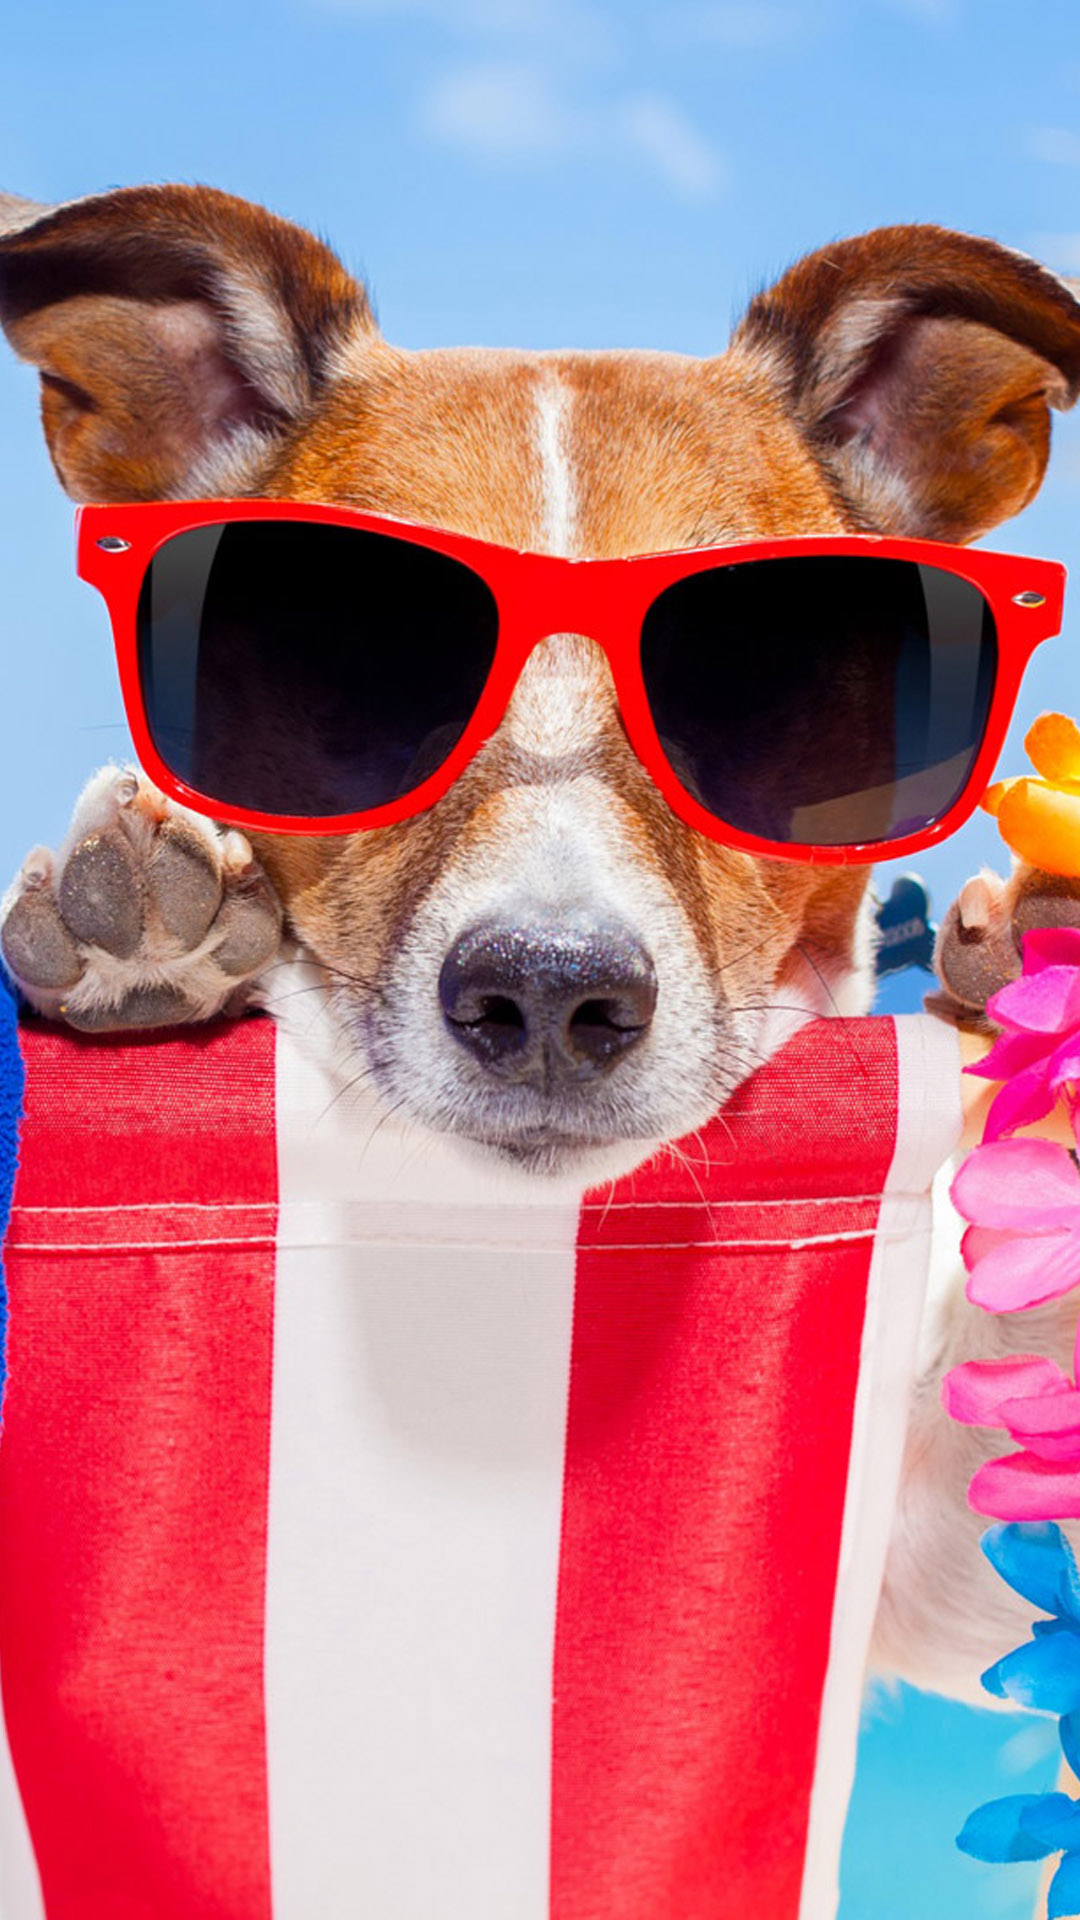 Dog Fun Sunglasses HD Mobile Wallpaper - Download Free 100% Pure HD